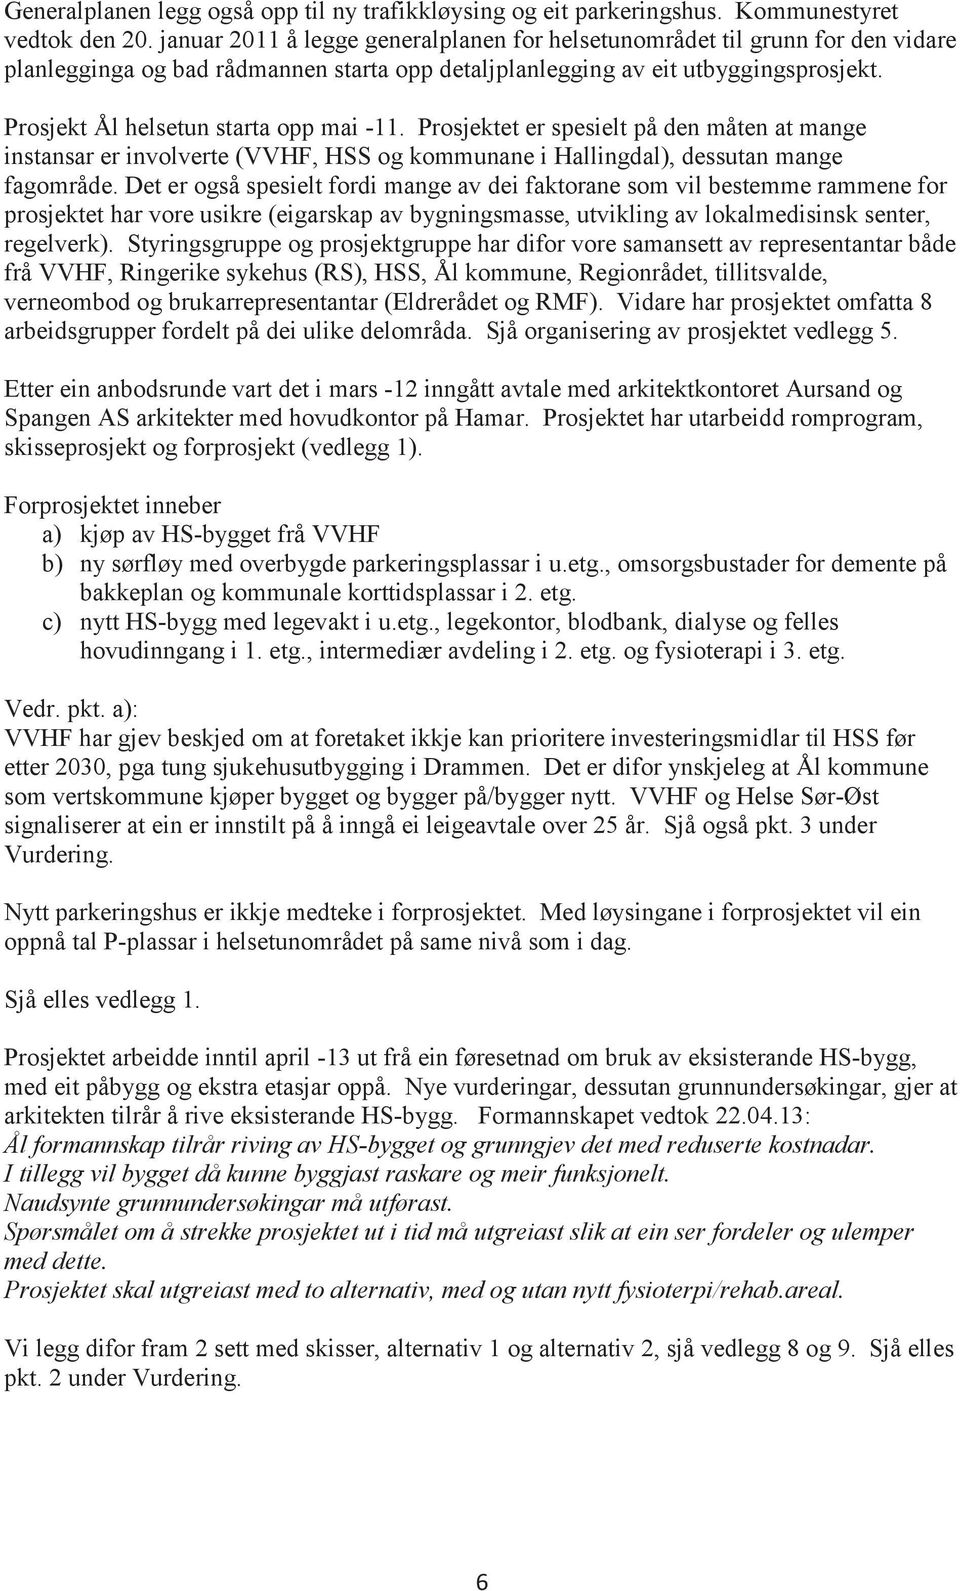 Prosjekt Ål helsetun starta opp mai -11. Prosjektet er spesielt på den måten at mange instansar er involverte (VVHF, HSS og kommunane i Hallingdal), dessutan mange fagområde.